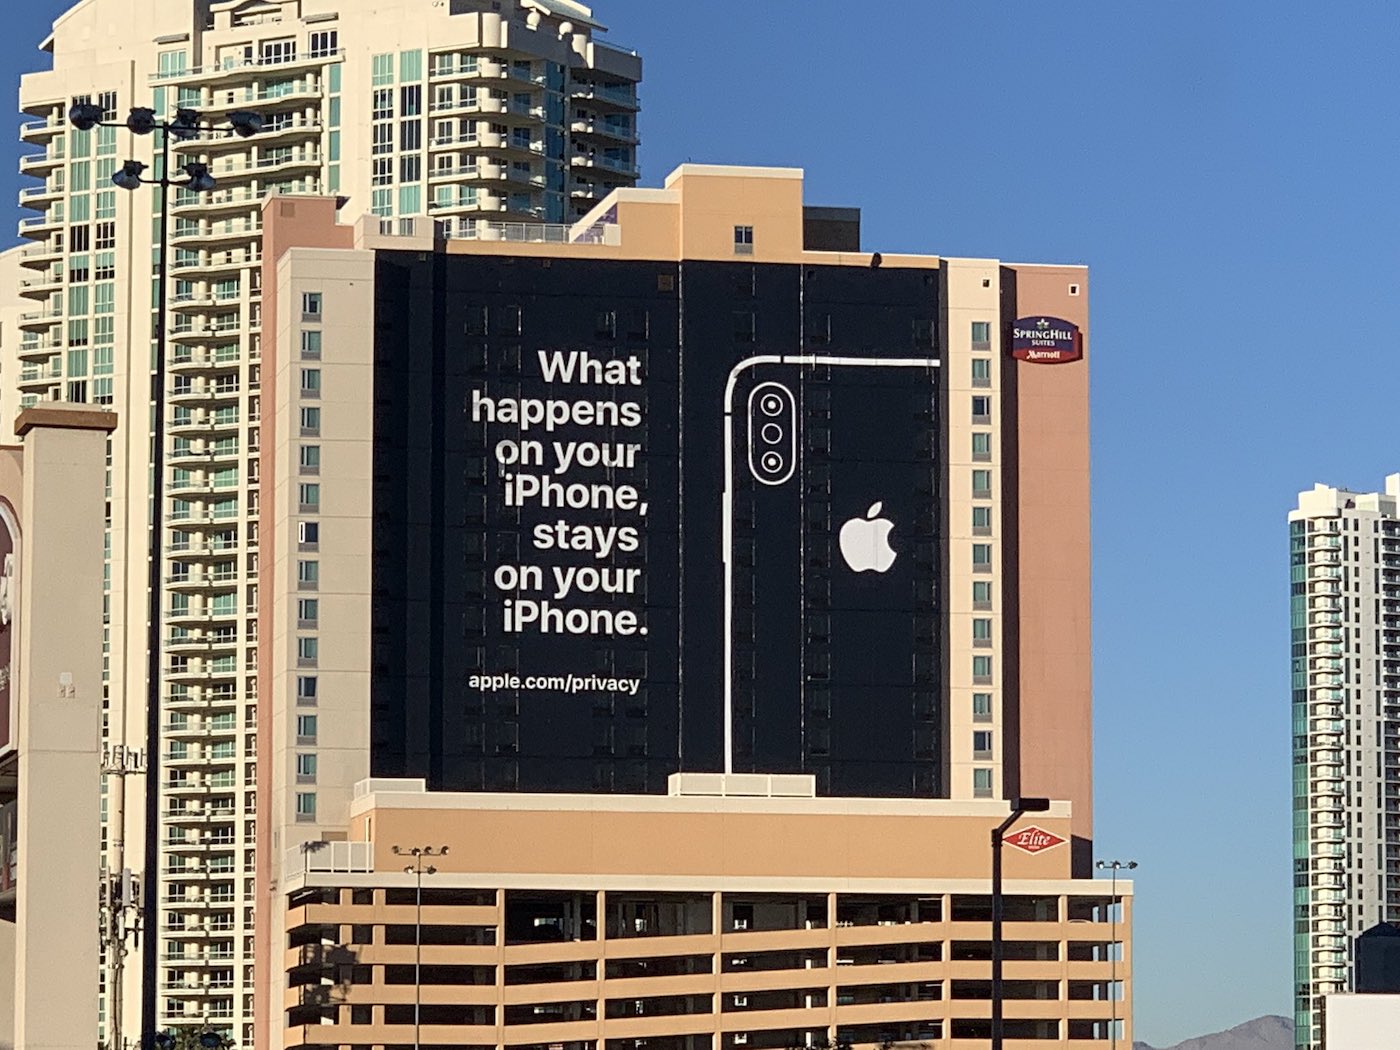 Apple affiche une publicité grandeur nature, dans laquelle la société vante sa politique de confidentialité, rappelant les différents scandales de 2018.